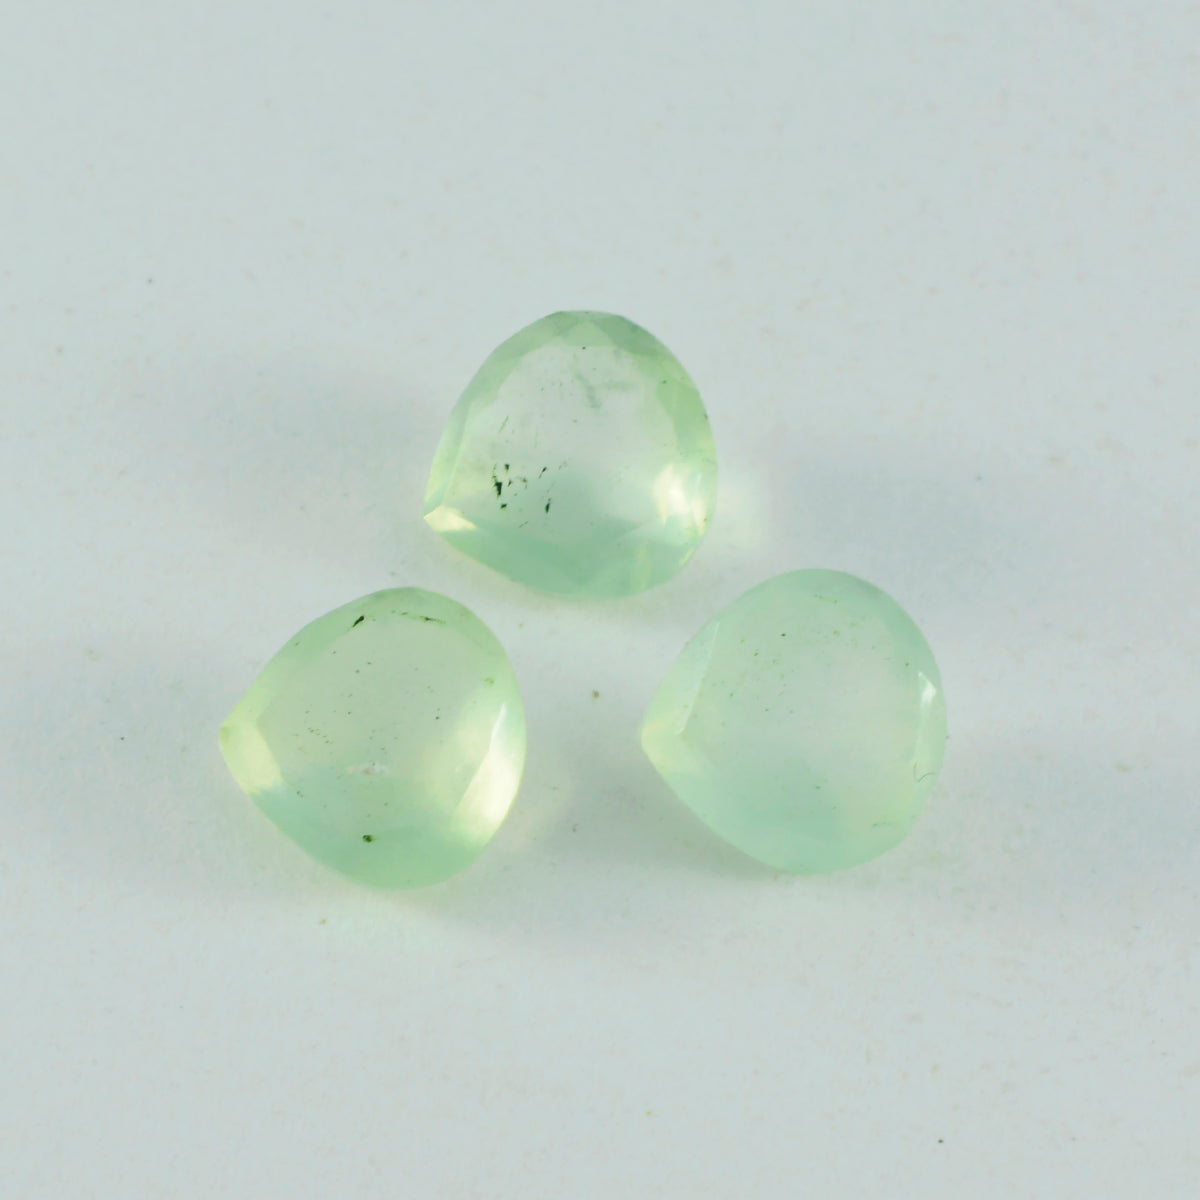 riyogems 1шт зеленый пренит ограненный 10х10 мм в форме сердца качественный камень